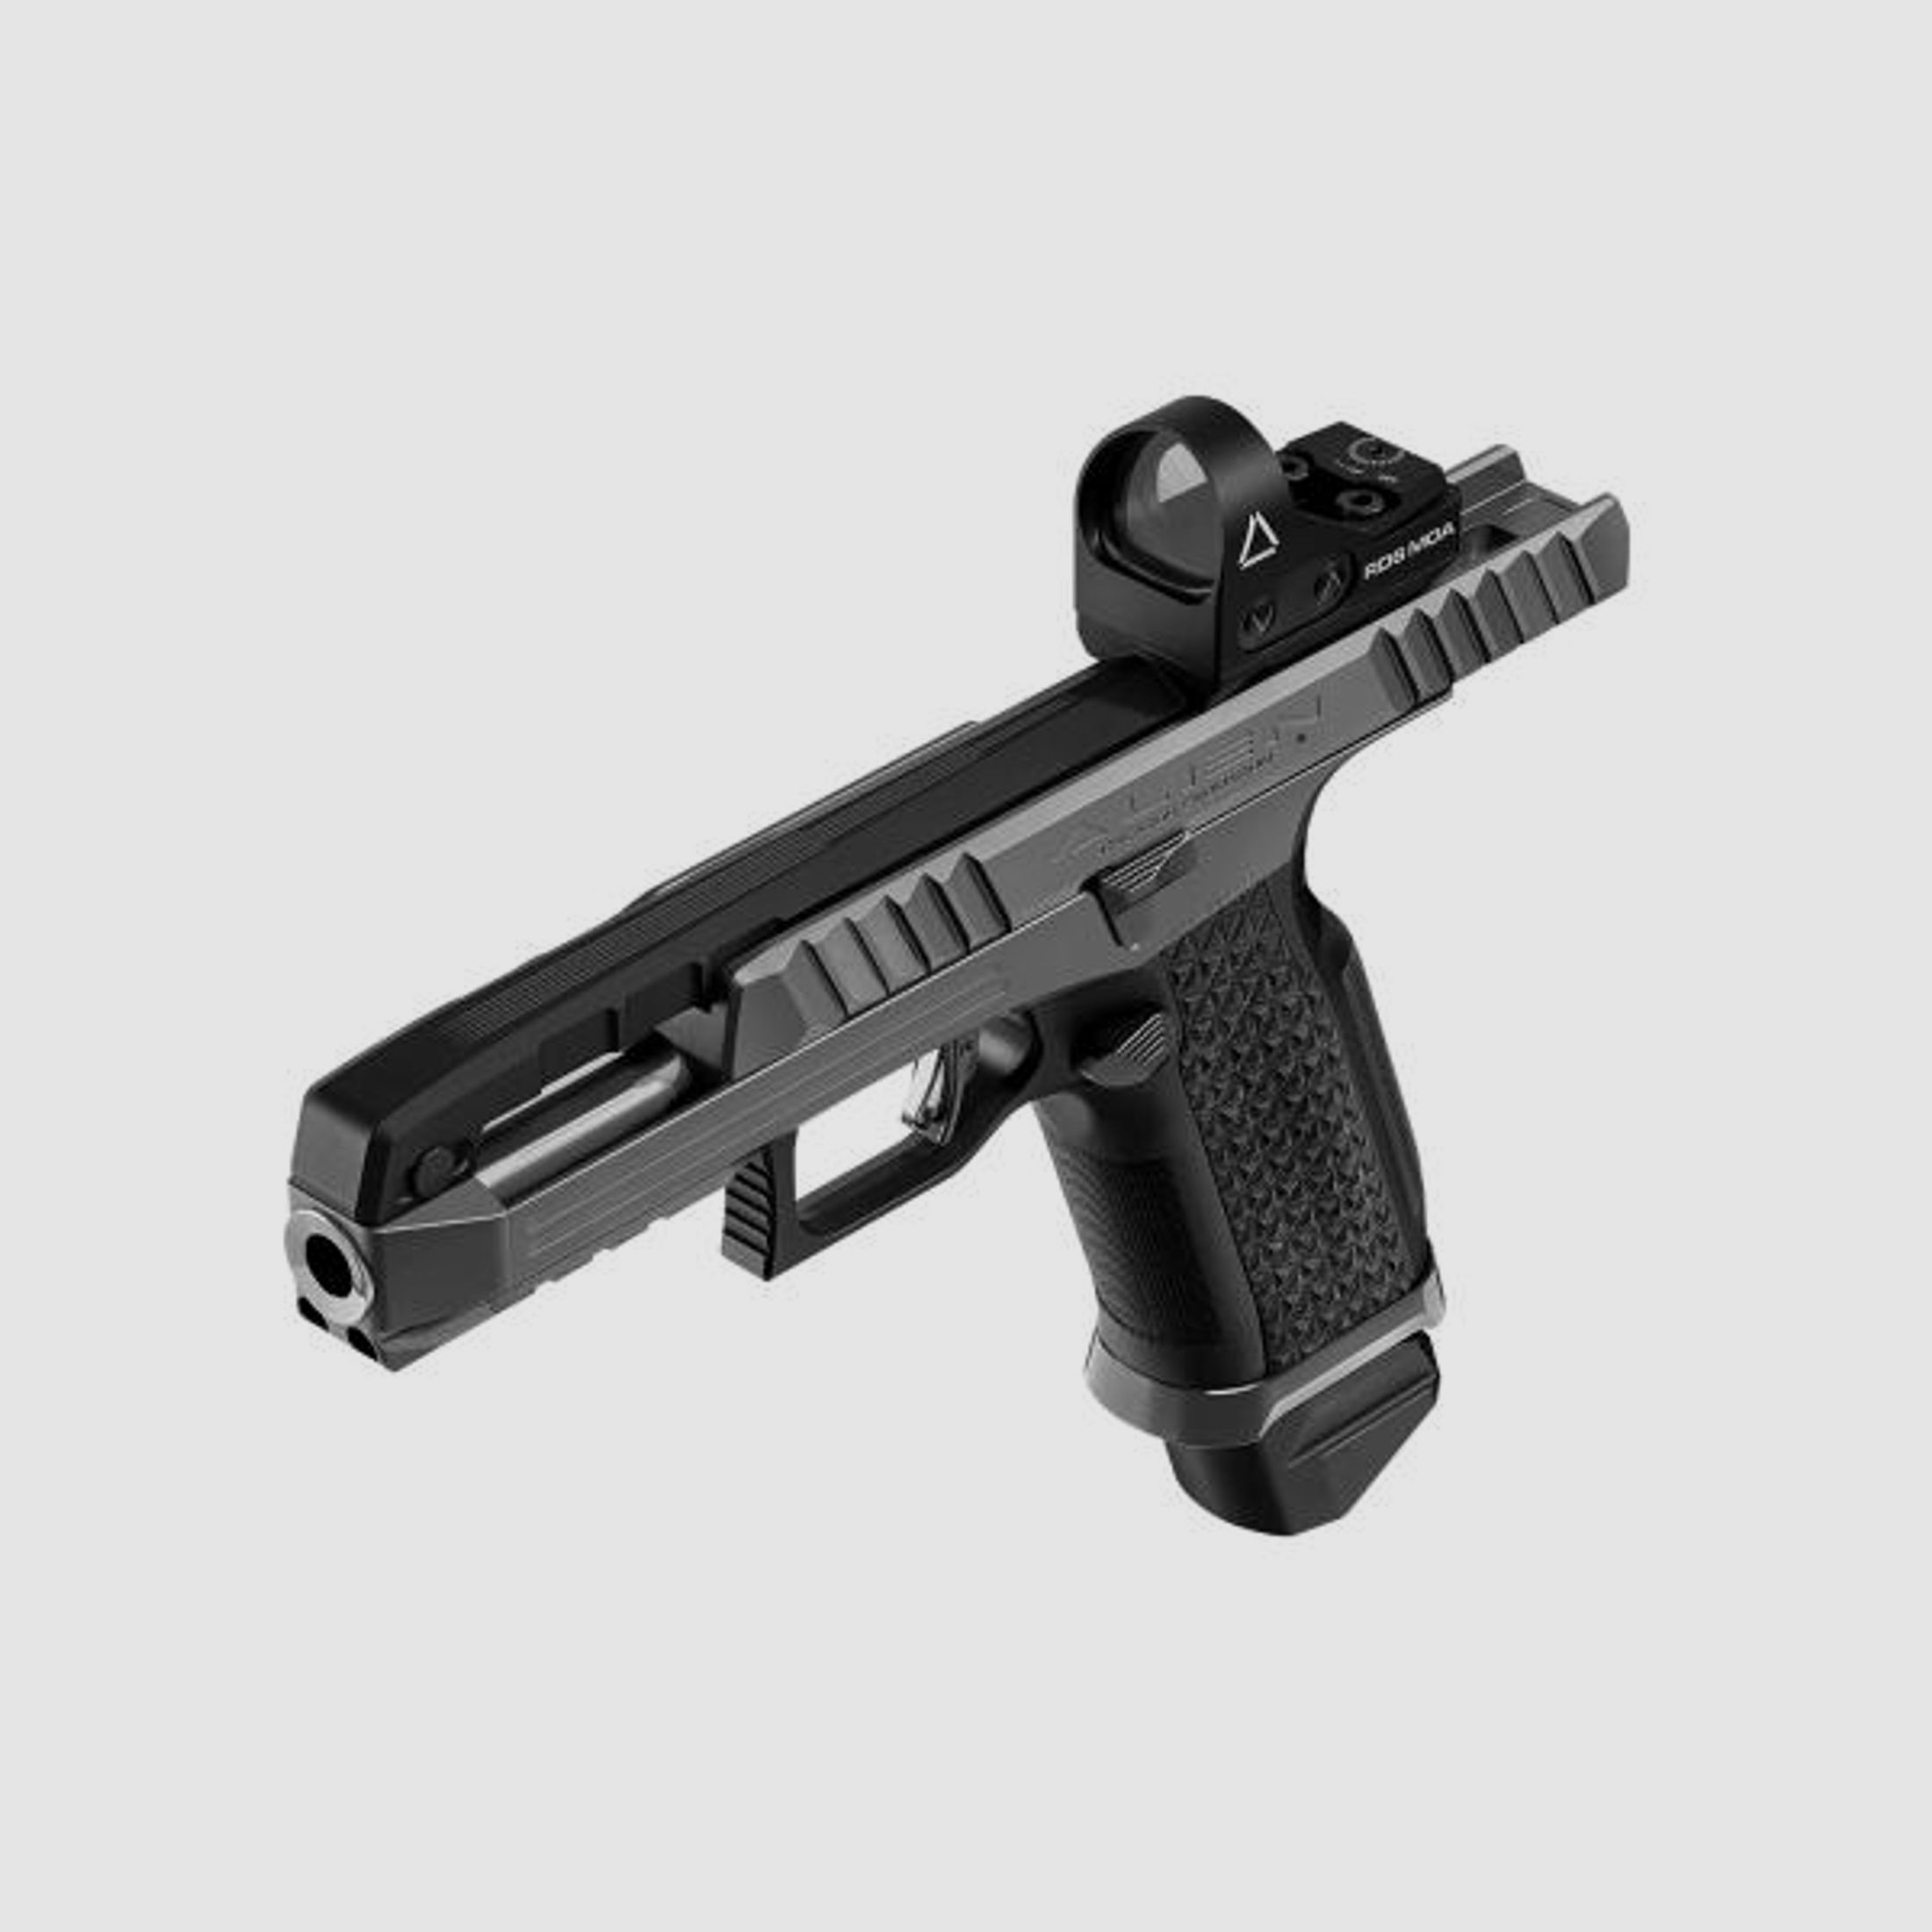 Laugo Arms Pistole Mod. ALIEN Creator OptikKit 9mmLuger  Grey/Black